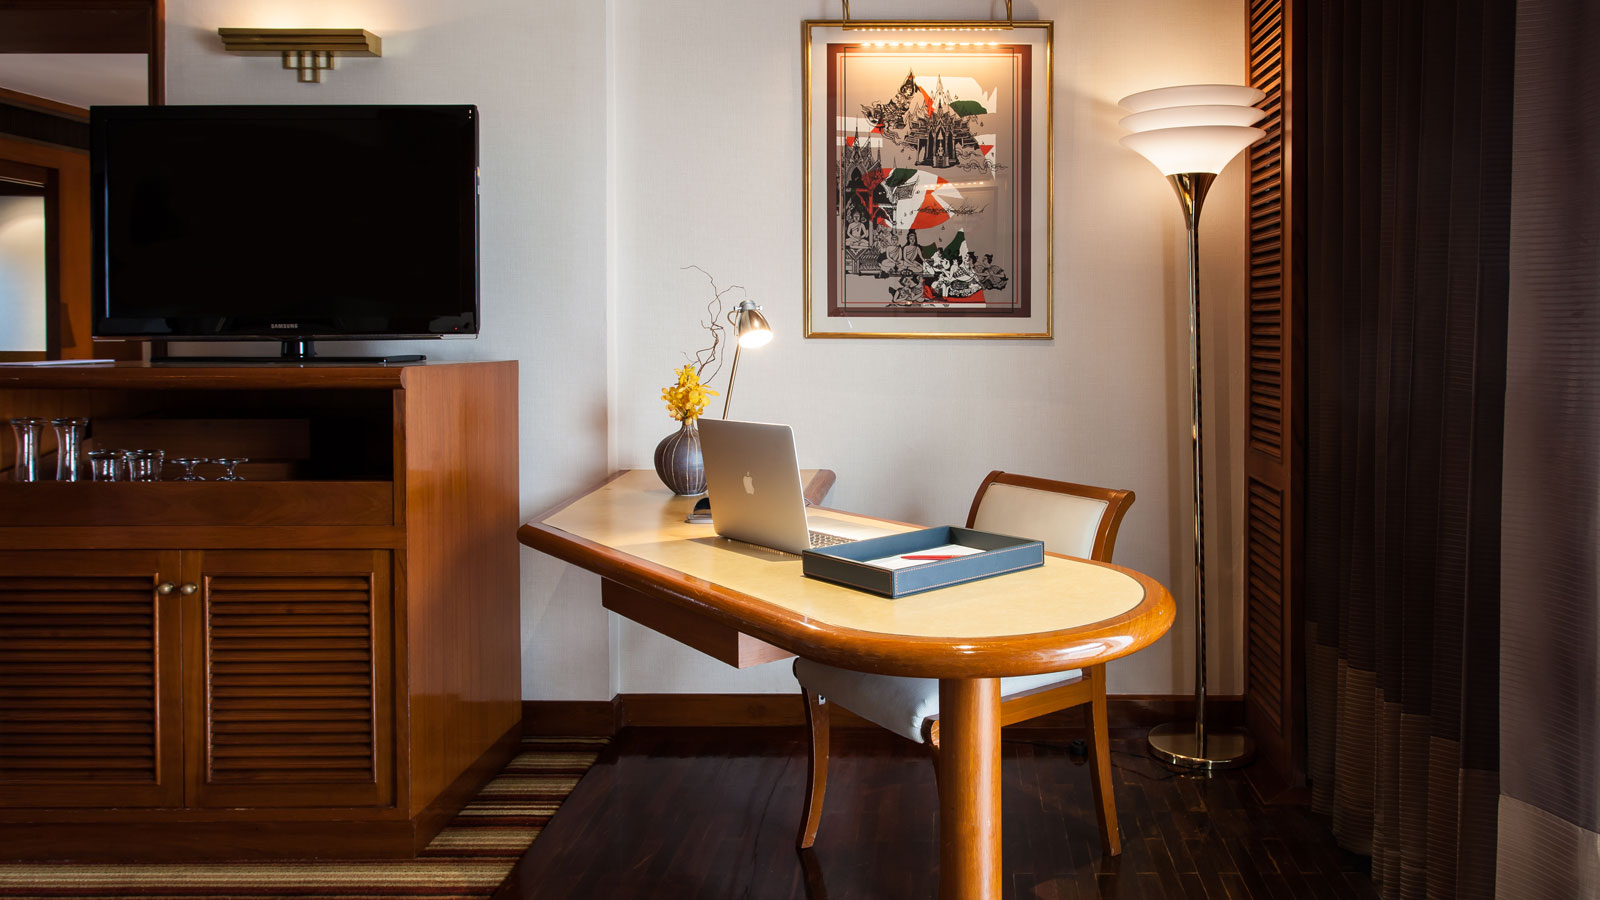 โต๊ะทำงาน - ห้องสวีท 1 ห้องนอน - โรงแรม อมารี ดอนเมือง แอร์พอร์ต กรุงเทพ